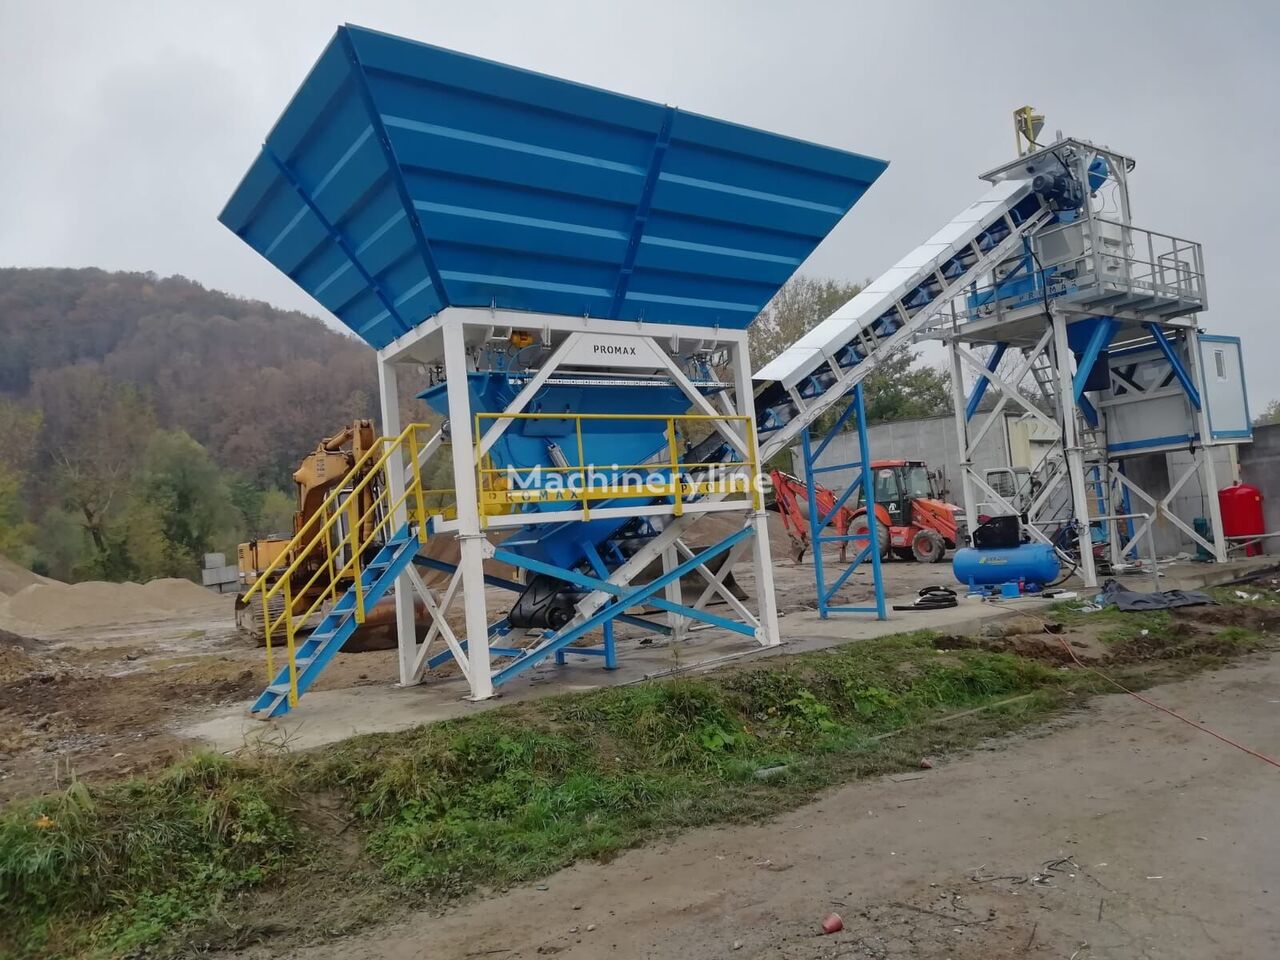 Promax Compact Concrete Batching Plant C60-SNG PLUS (60m³/h) planta de hormigón nueva